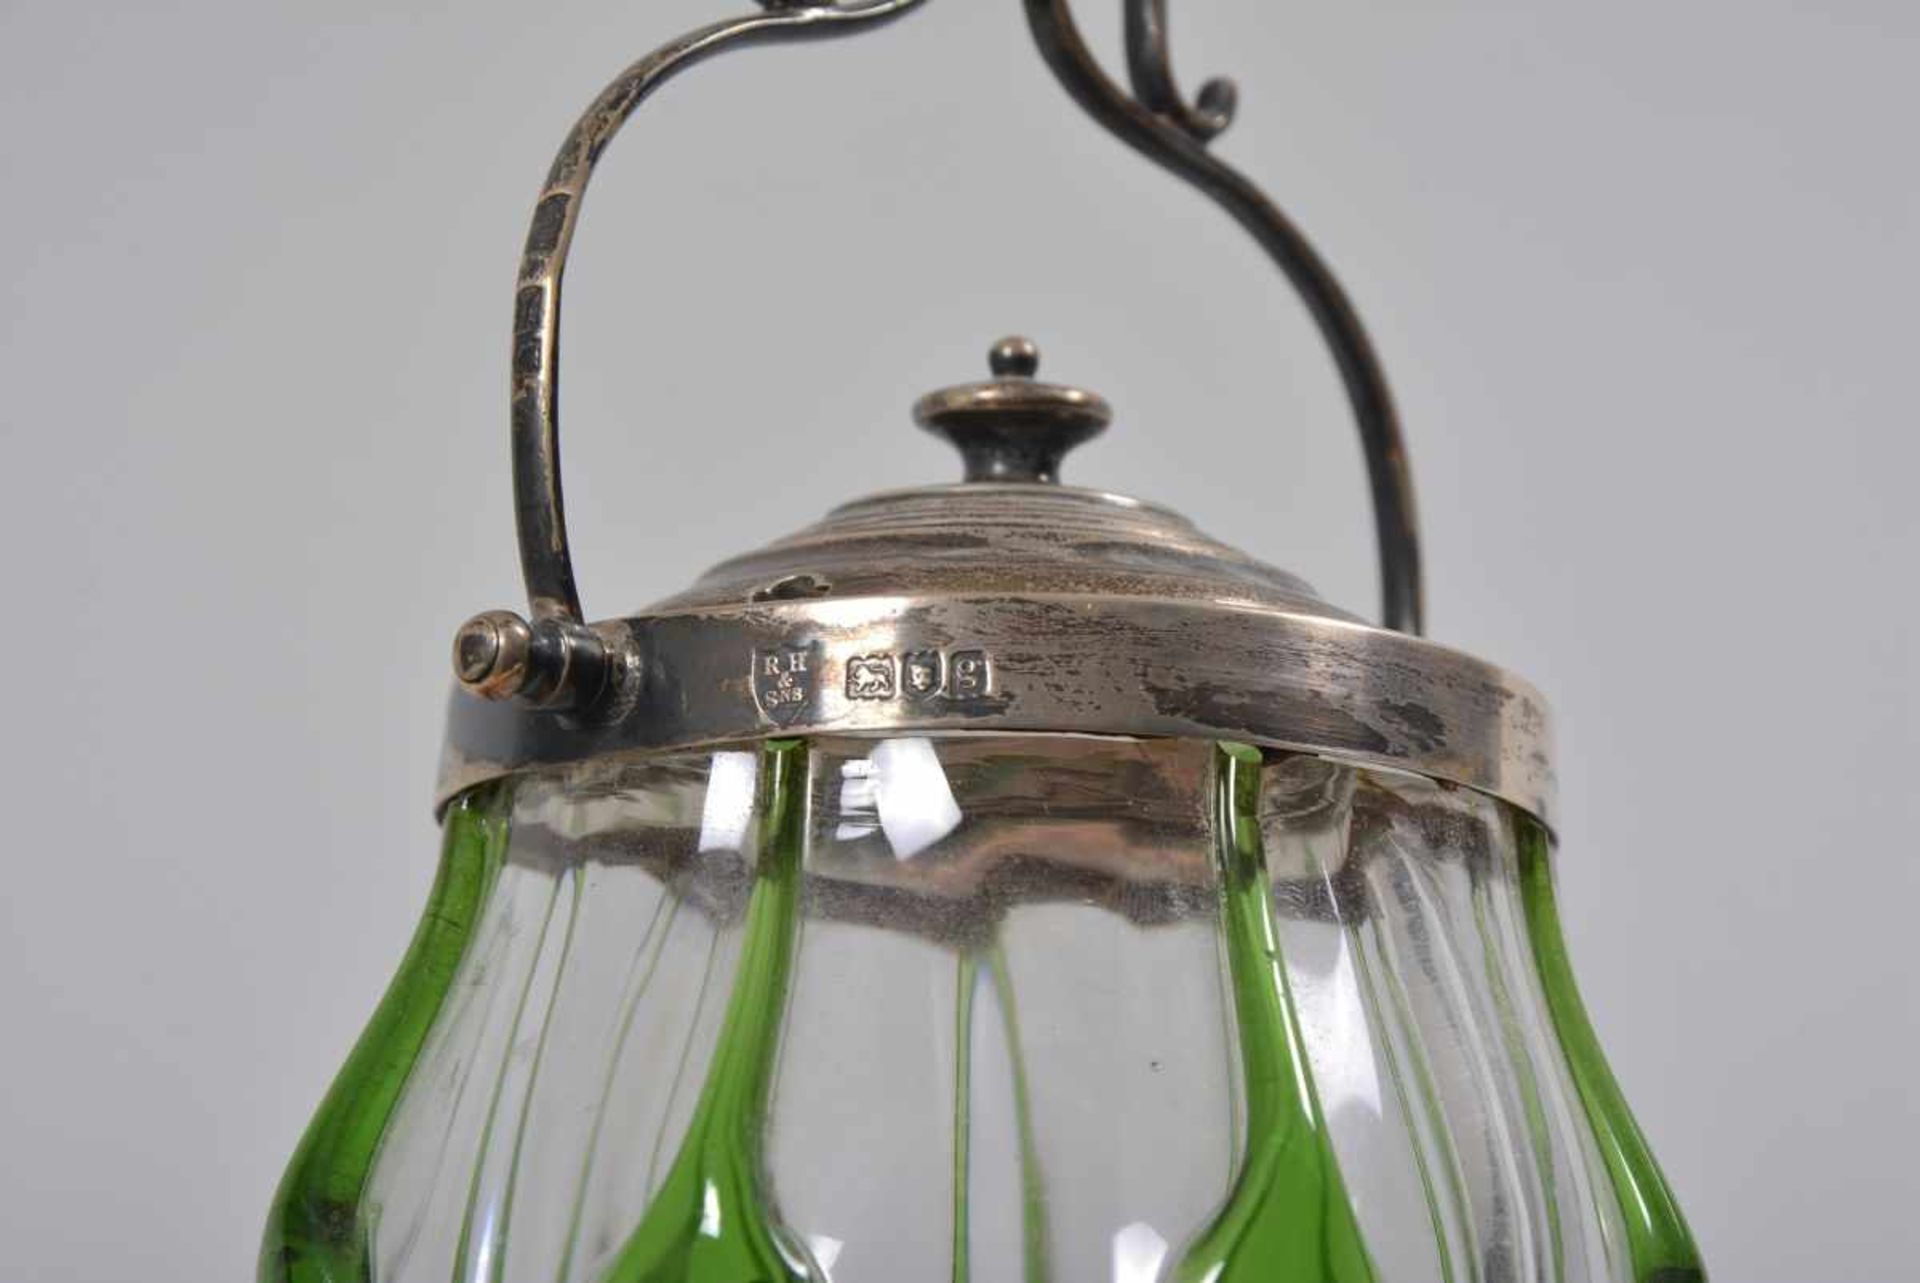 Jugendstil-Konfitüretopf925er Silber/Glas, R.H. Halford & Sons, London, 1902, gebauchter Korpus - Image 2 of 2